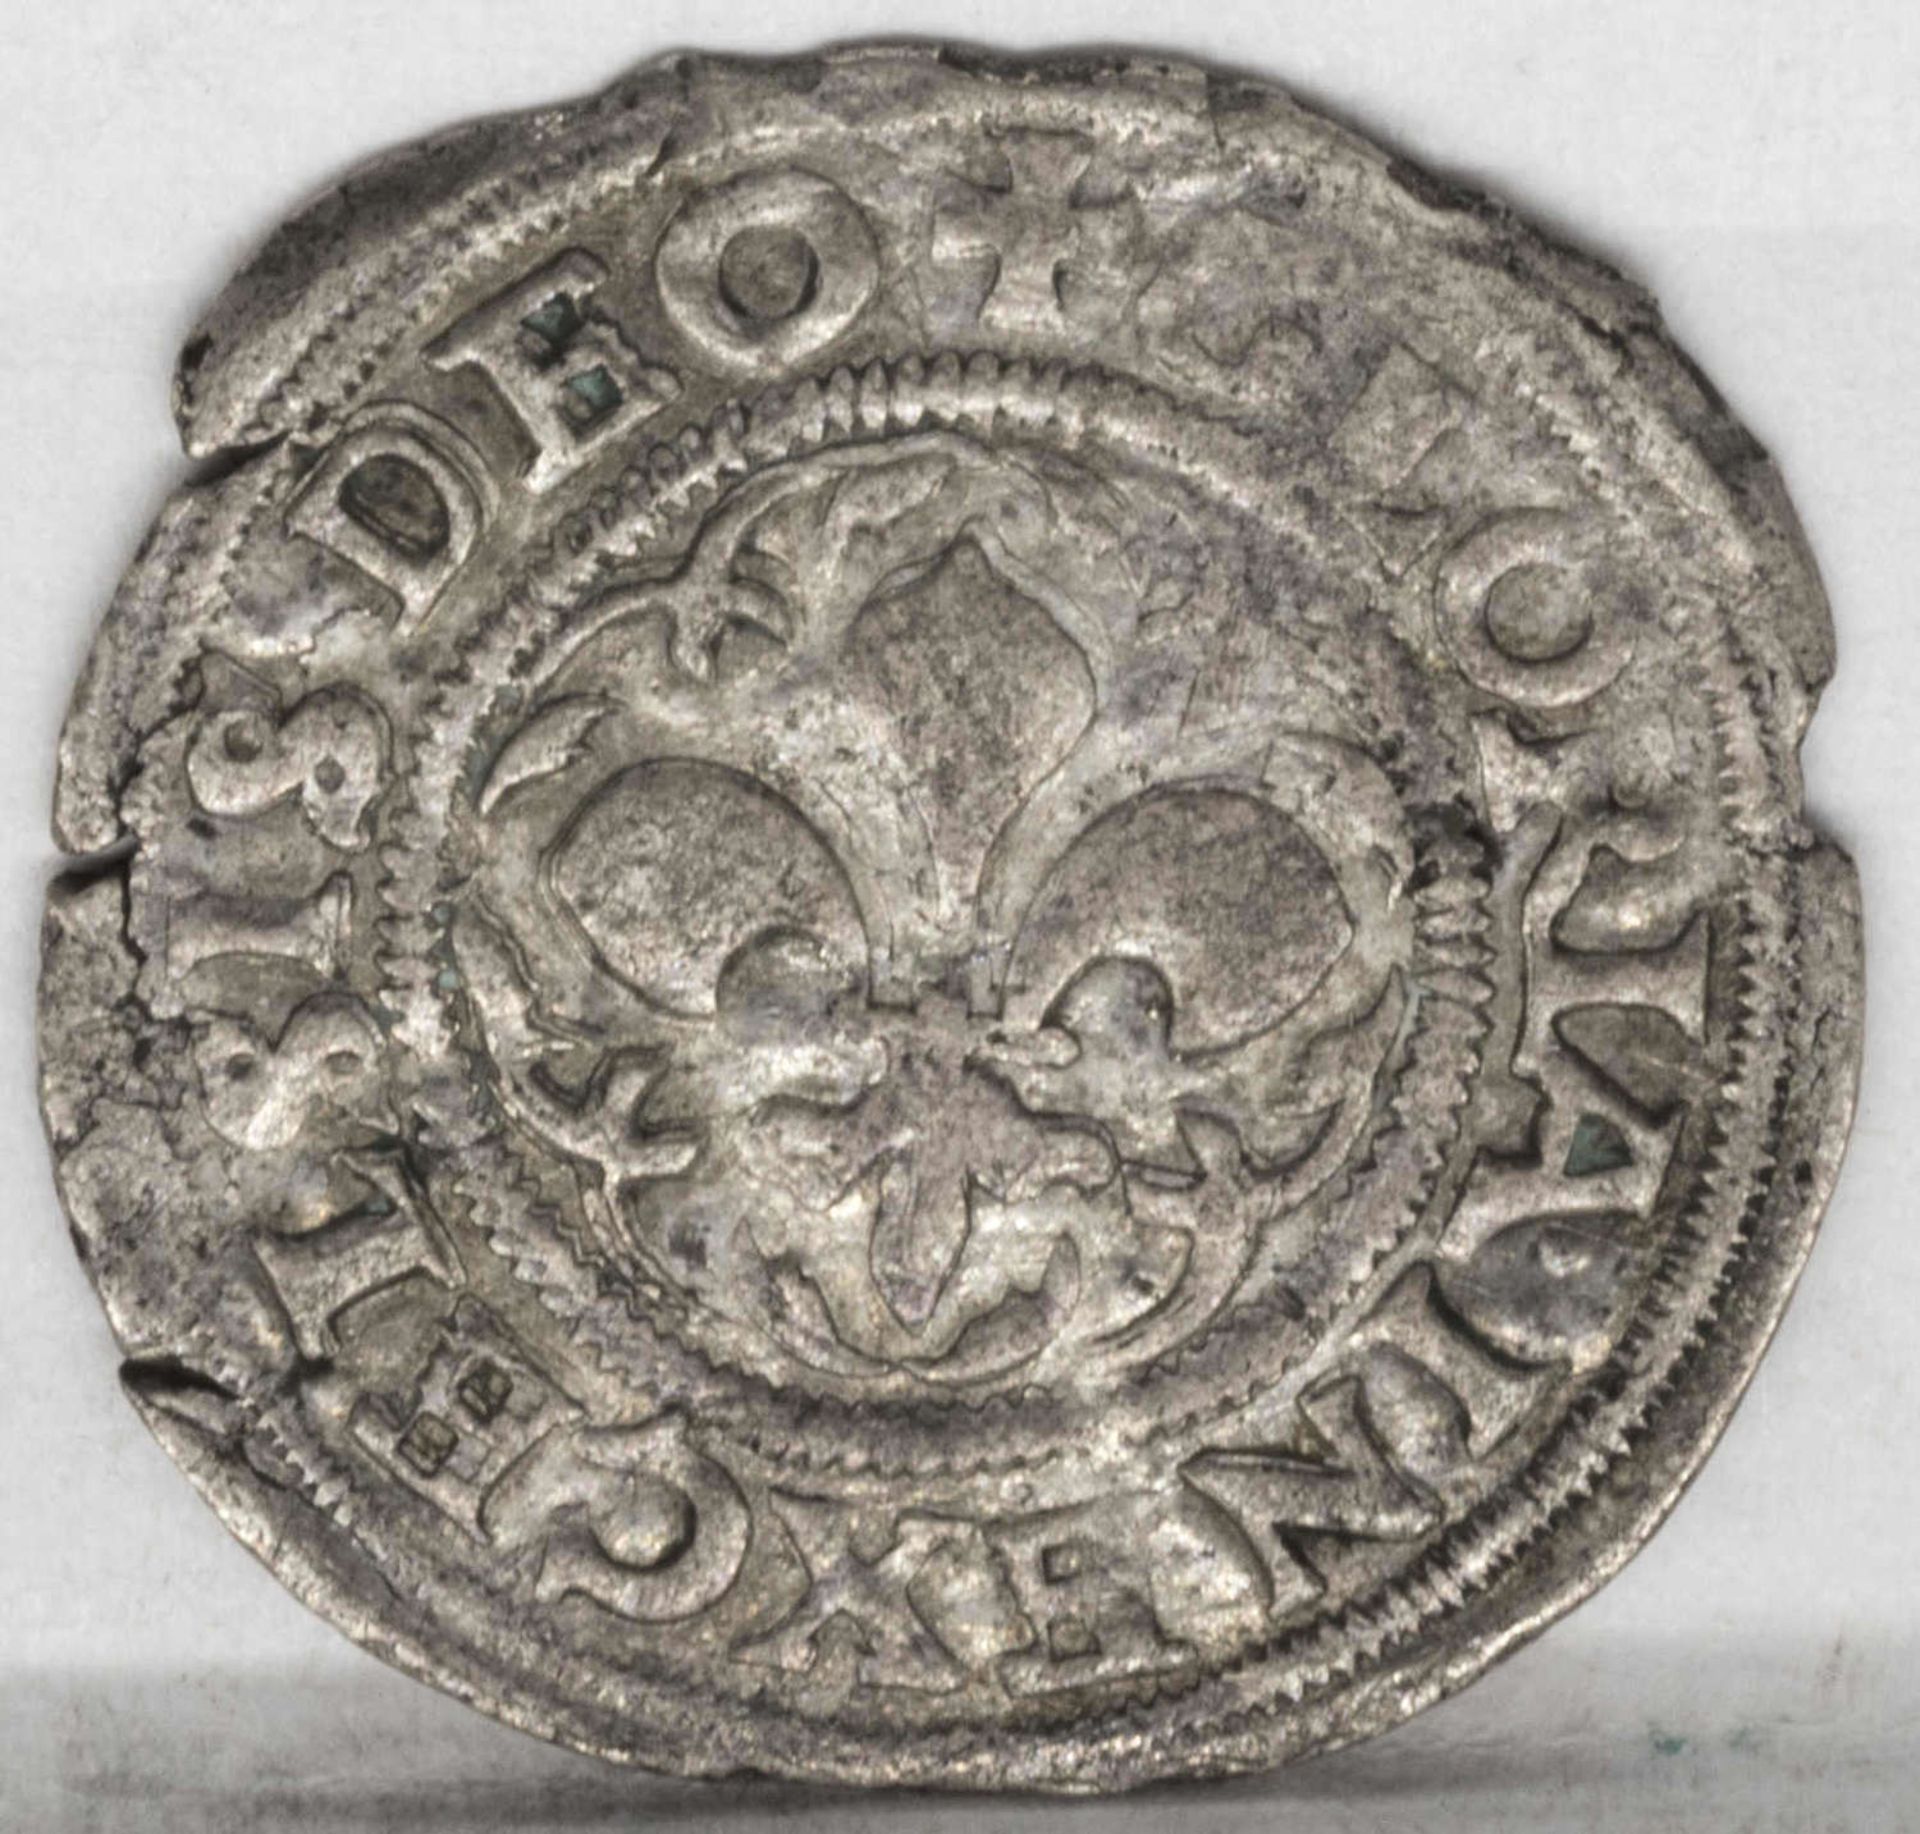 Frankreich nach 1622, Vierer - Silbermünze, ohne Jahrgang, Gewicht: ca. 1,5 g, Durchmesser: ca. 21